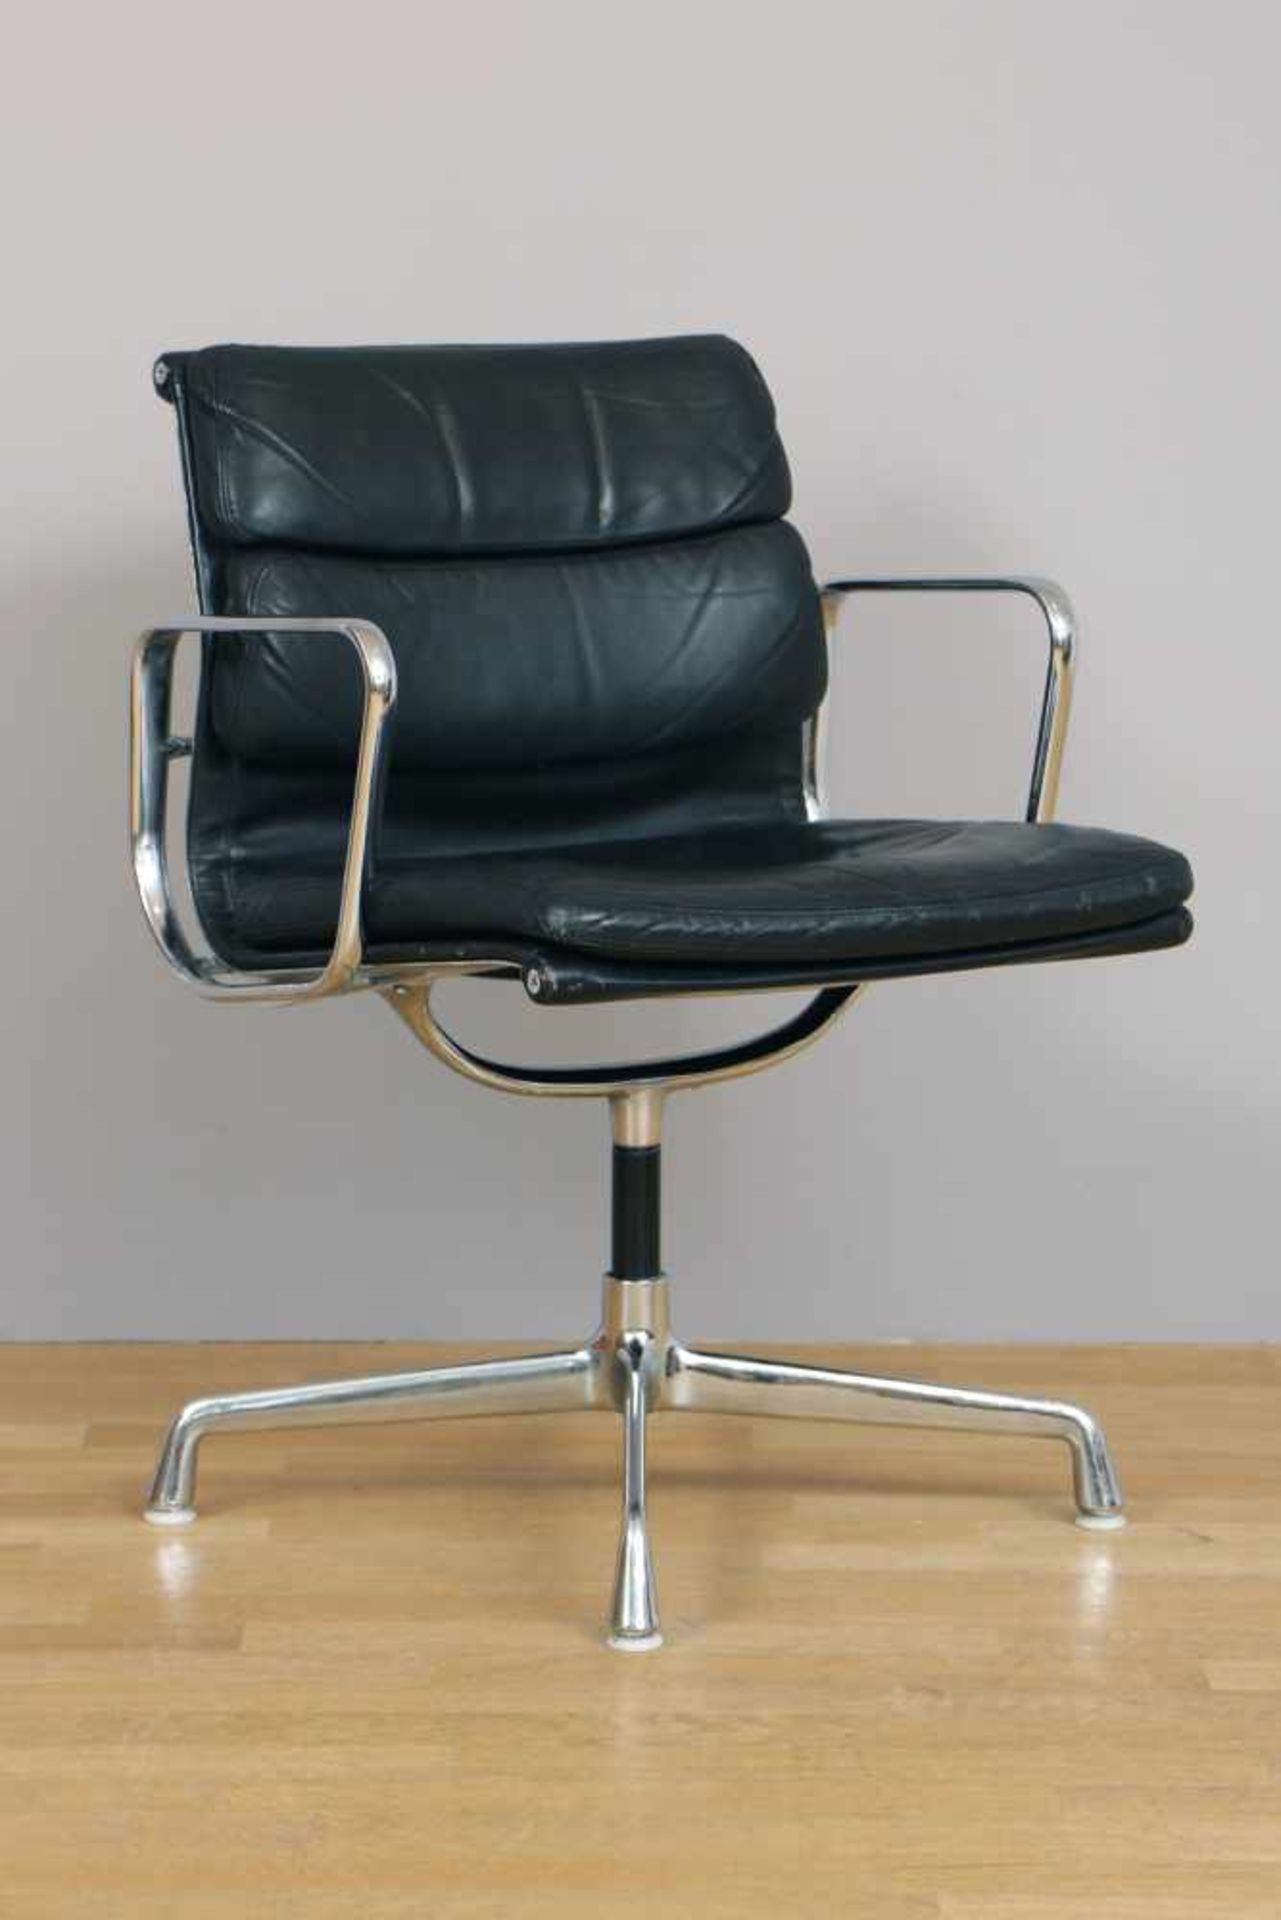 CHARLES & RAY EAMES für Hermann Miller Schreibtischstuhl EA 208Soft Pad Alu Chair, schwarzes Leder